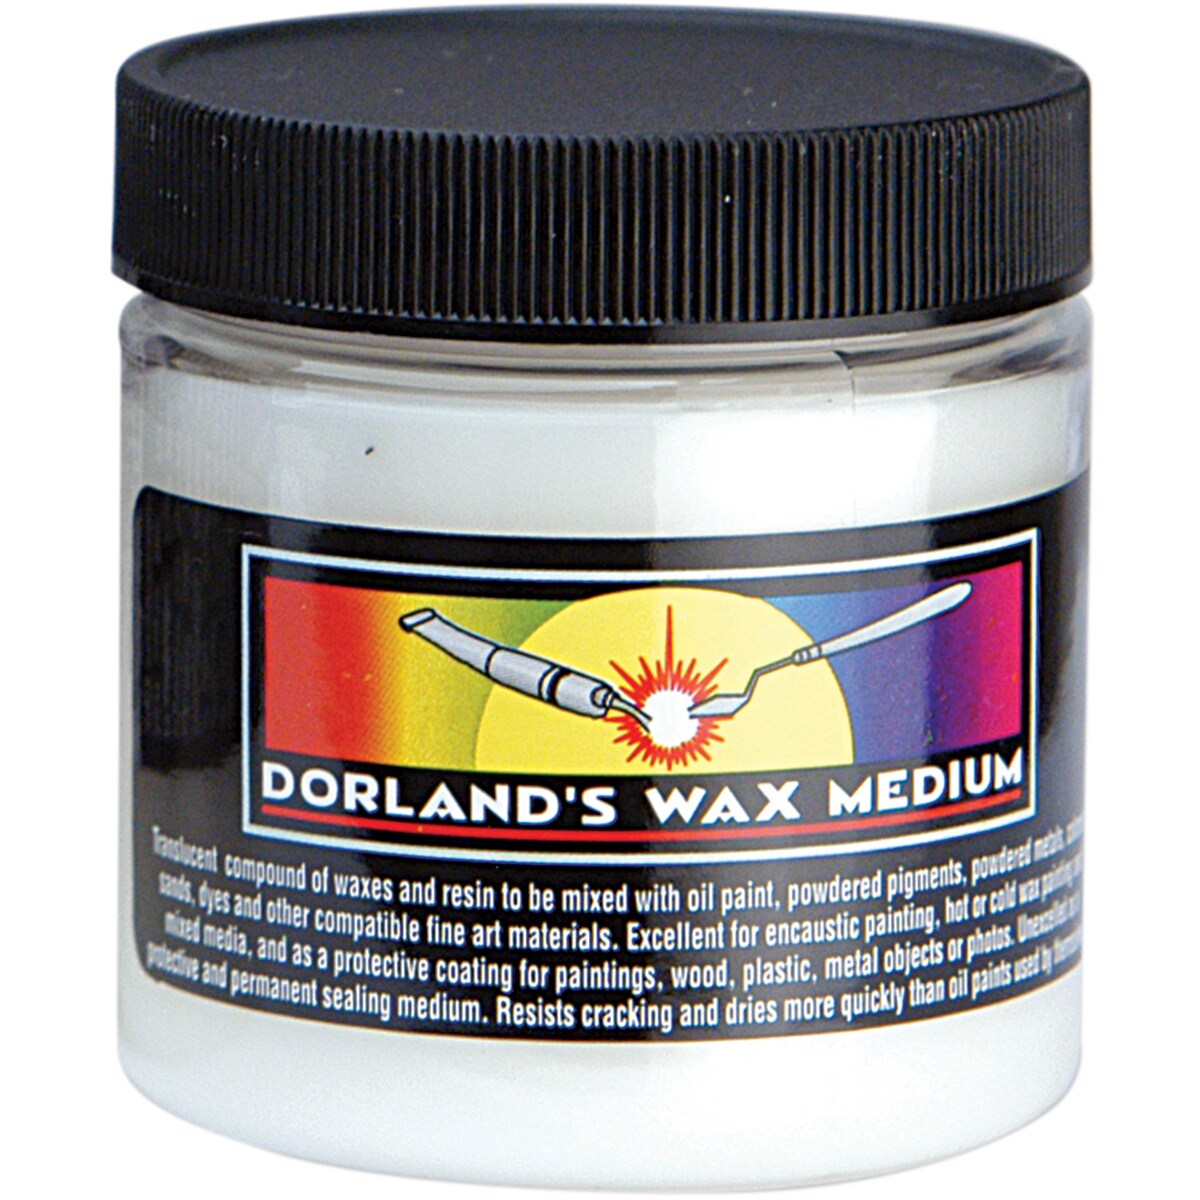 Dorland's Wax Medium, Hobby Lobby